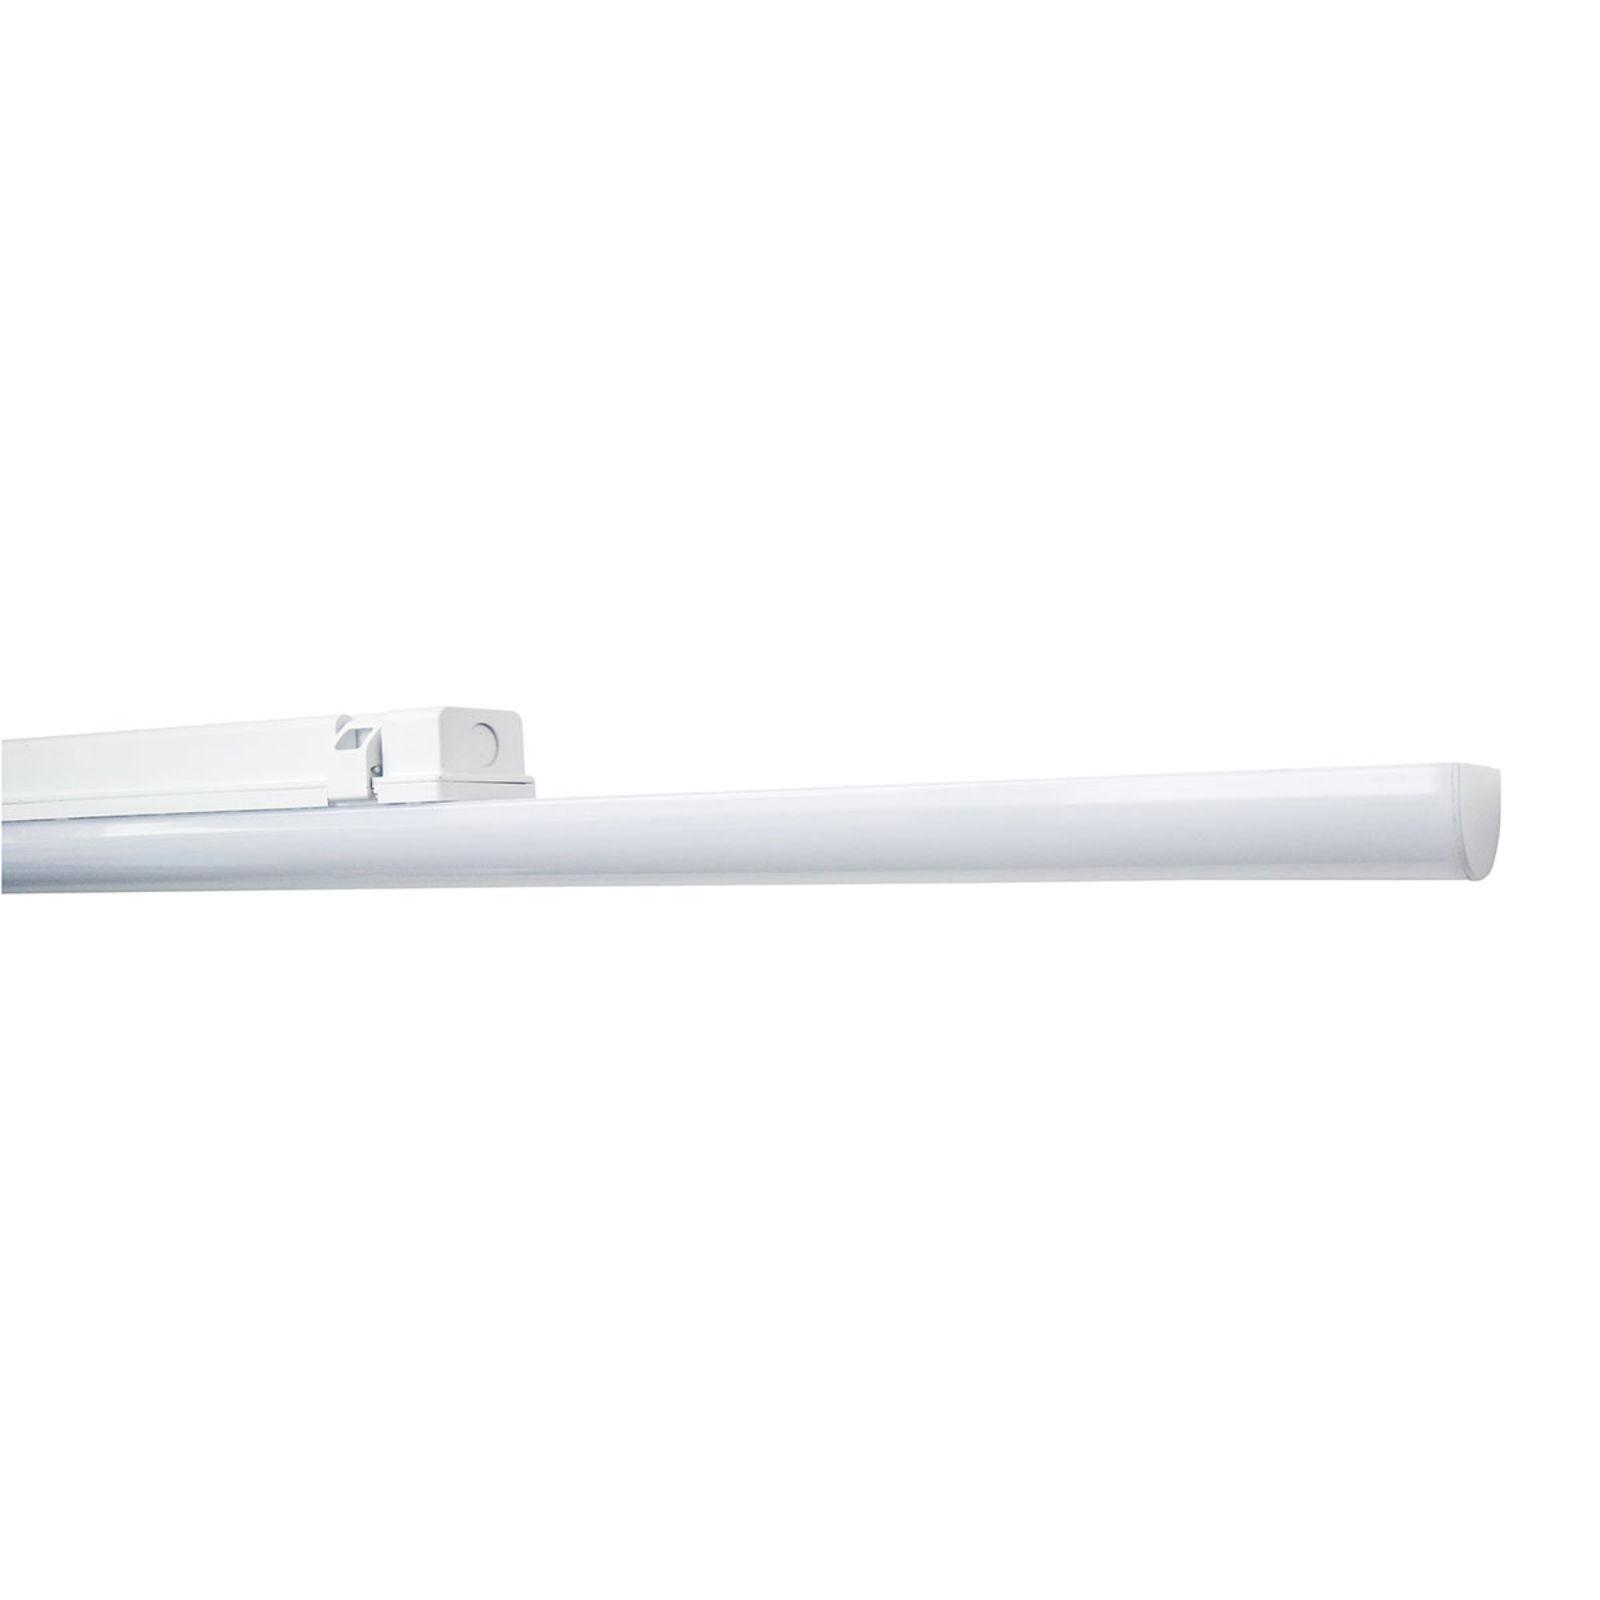 LED-våtrumslampa Aquafix Sensor 120